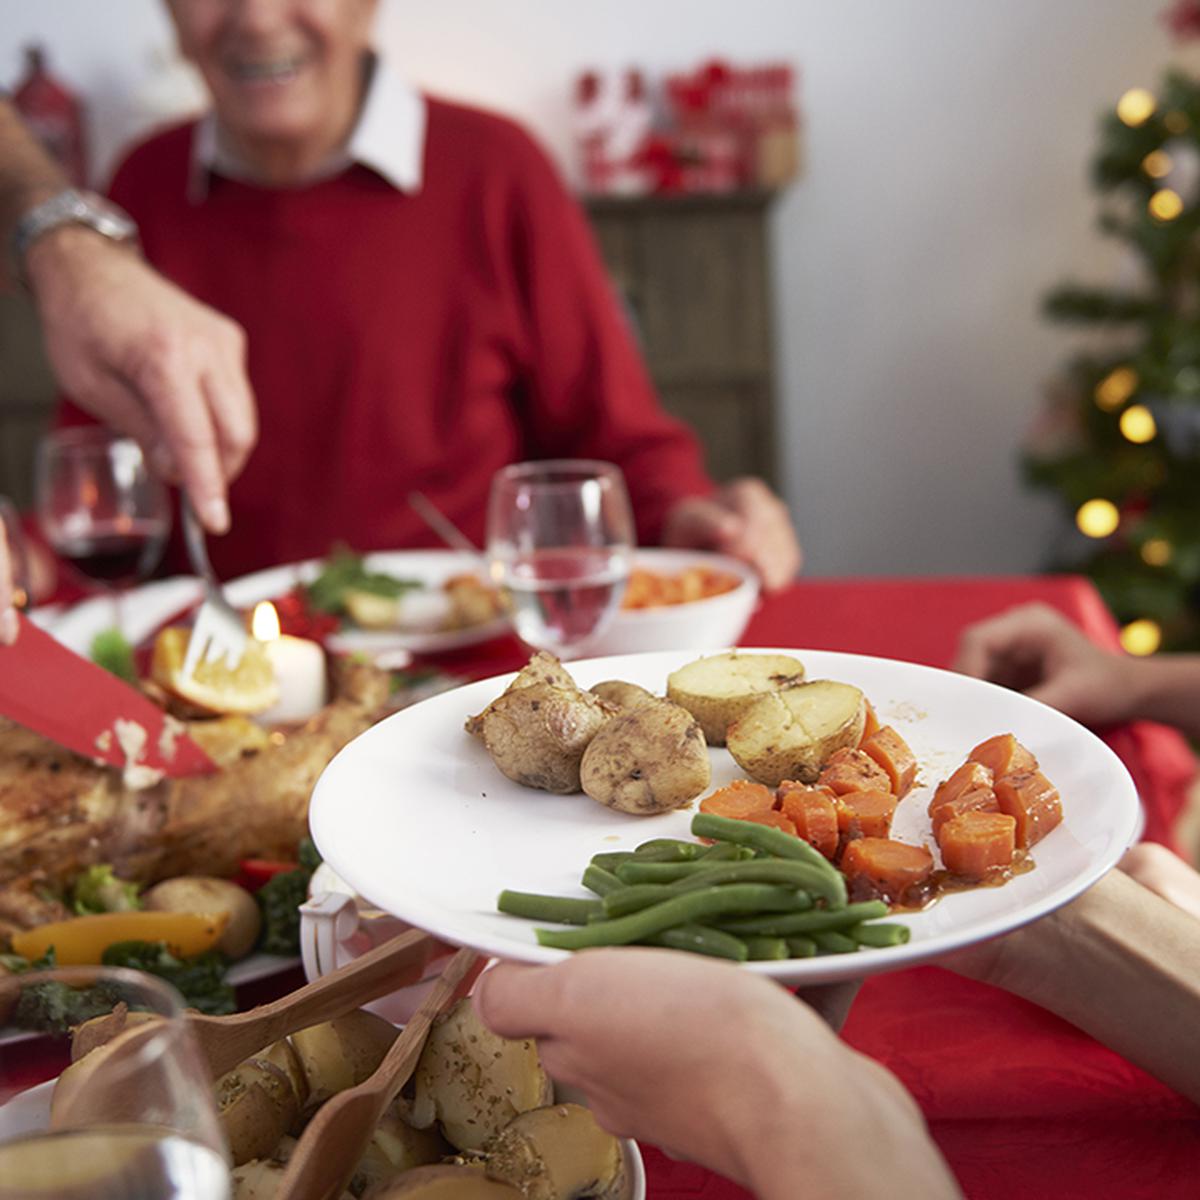 3 platillos saludables que puedes preparar para la cena de Año Nuevo |  Salud | Alimentos | Cena navideña | Dieta | Arroz árabe | cómo preparar |  Pavo | | VIDA-SANA | DEPOR